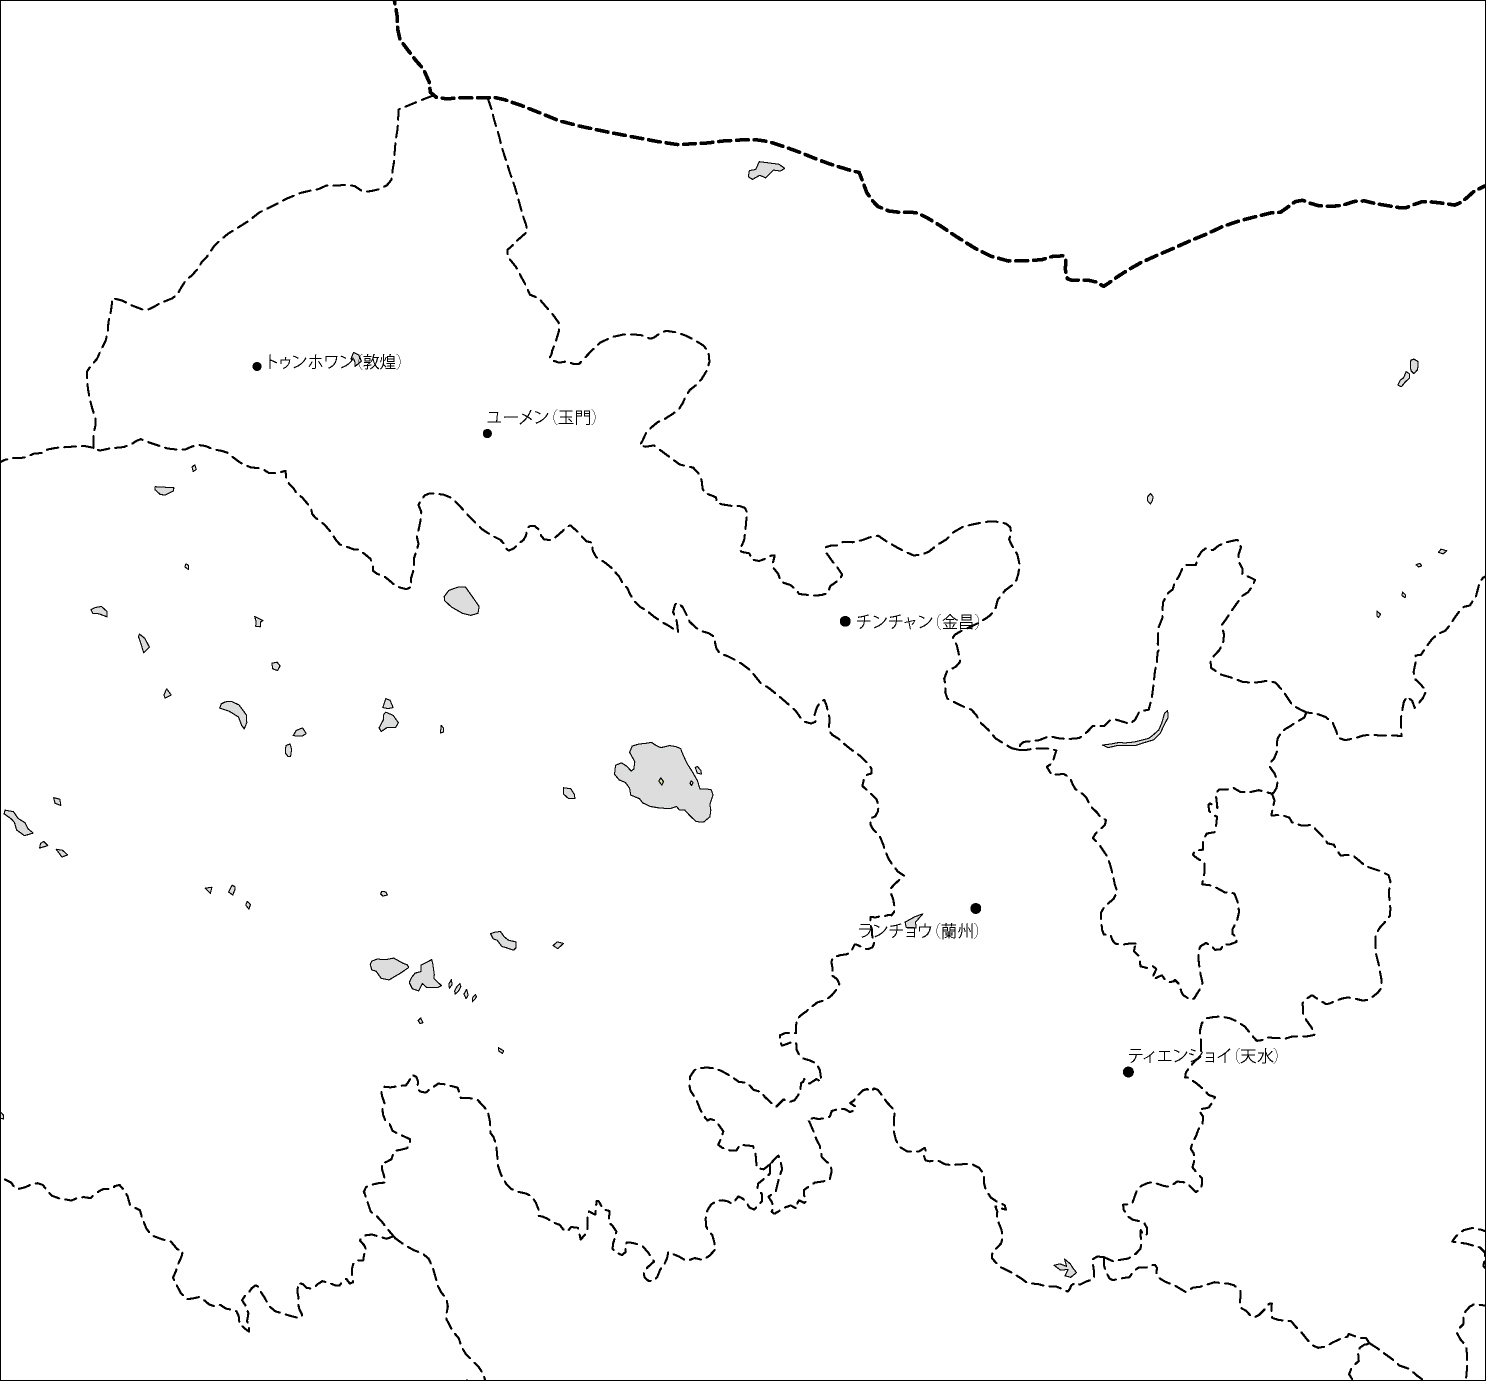 甘粛省白地図(主な都市あり)のフリーデータの画像